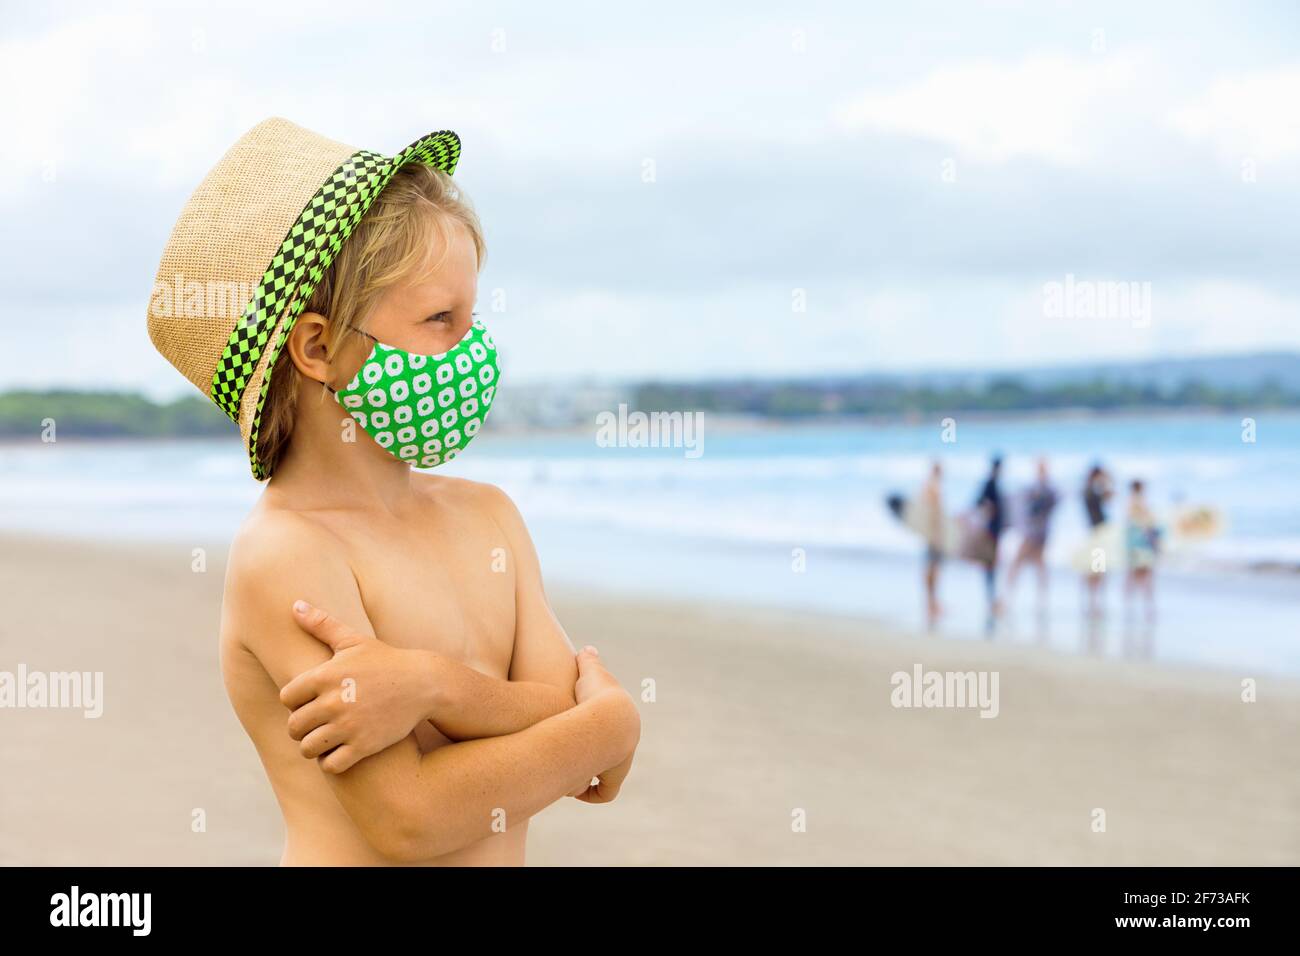 Kind in Strohhut, stilvolle Maske Spaß am Strand haben. Neue Regeln für das  Tragen von Gesichtsbedeckungen an öffentlichen Orten. Stornierte  Kreuzfahrt, Tour wegen Coronavirus COVID Stockfotografie - Alamy